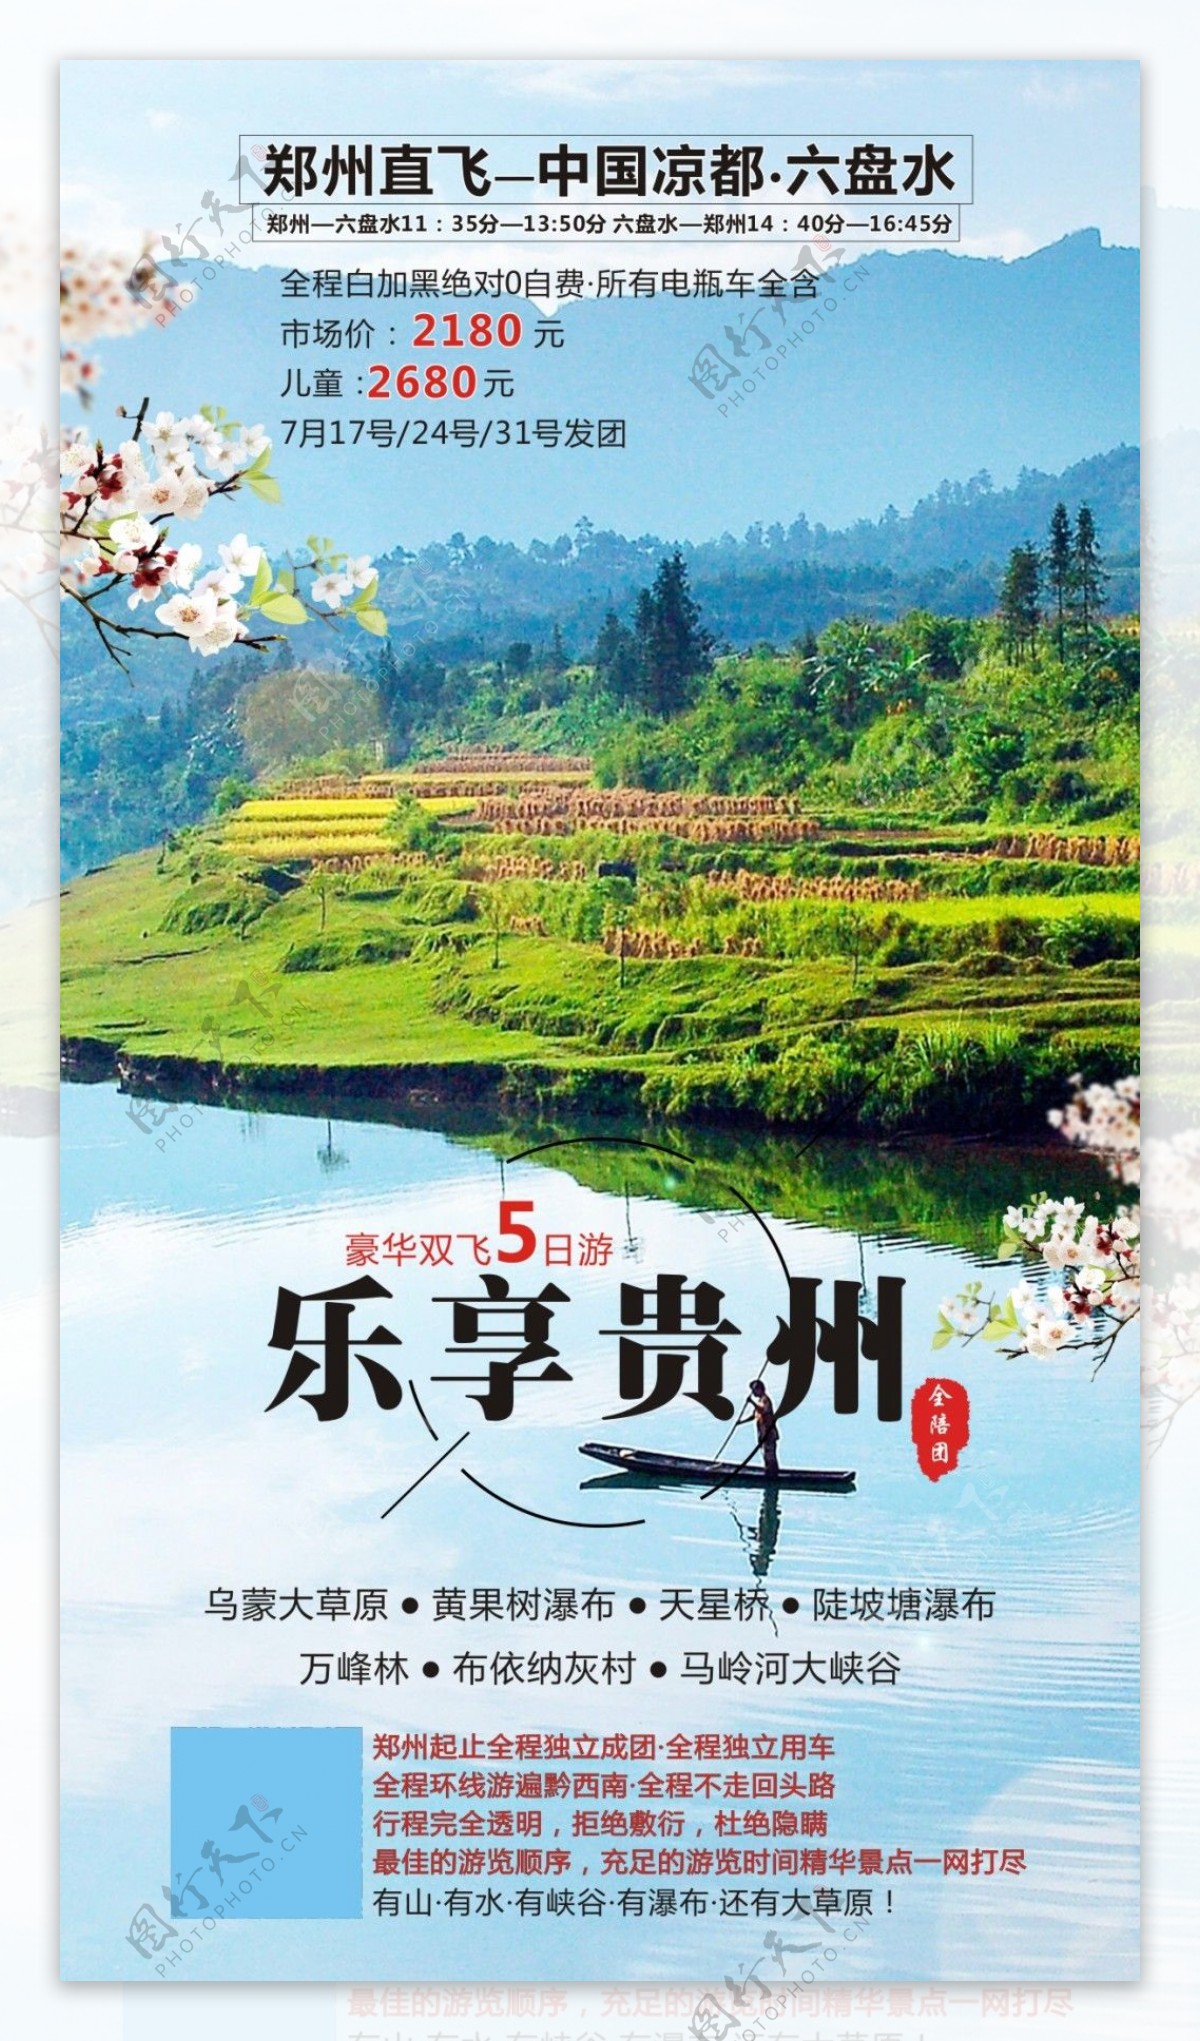 乐享贵州旅游海报